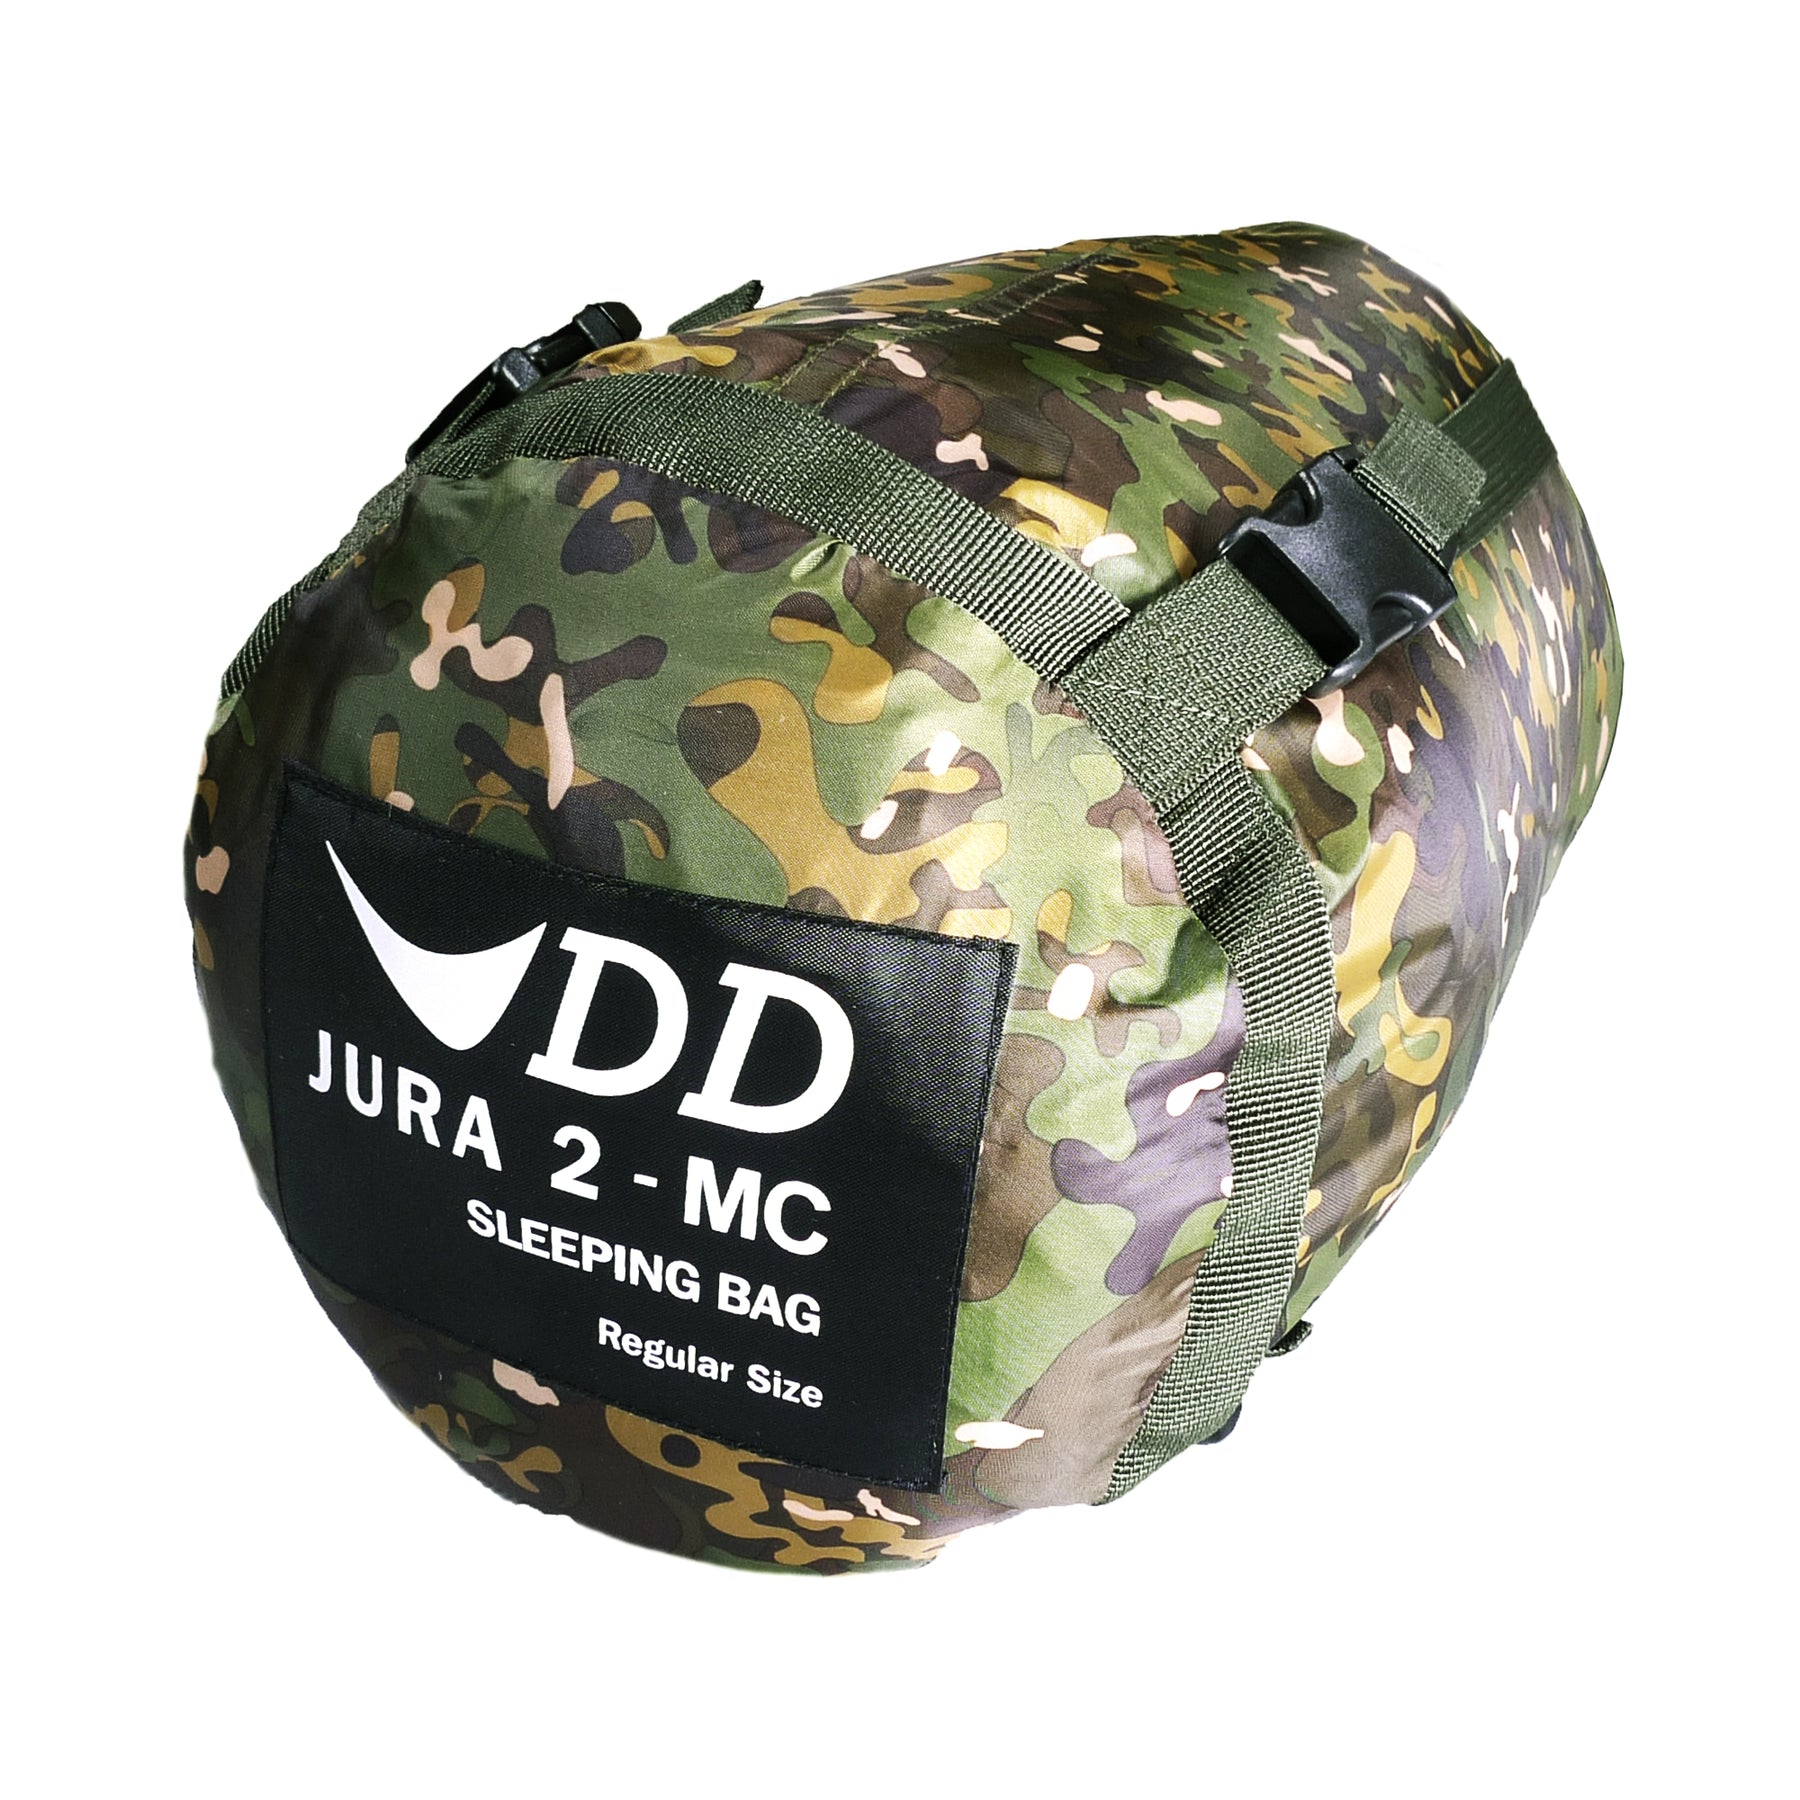 DD JURA 2 variante multicam regular nella sacca di compressione